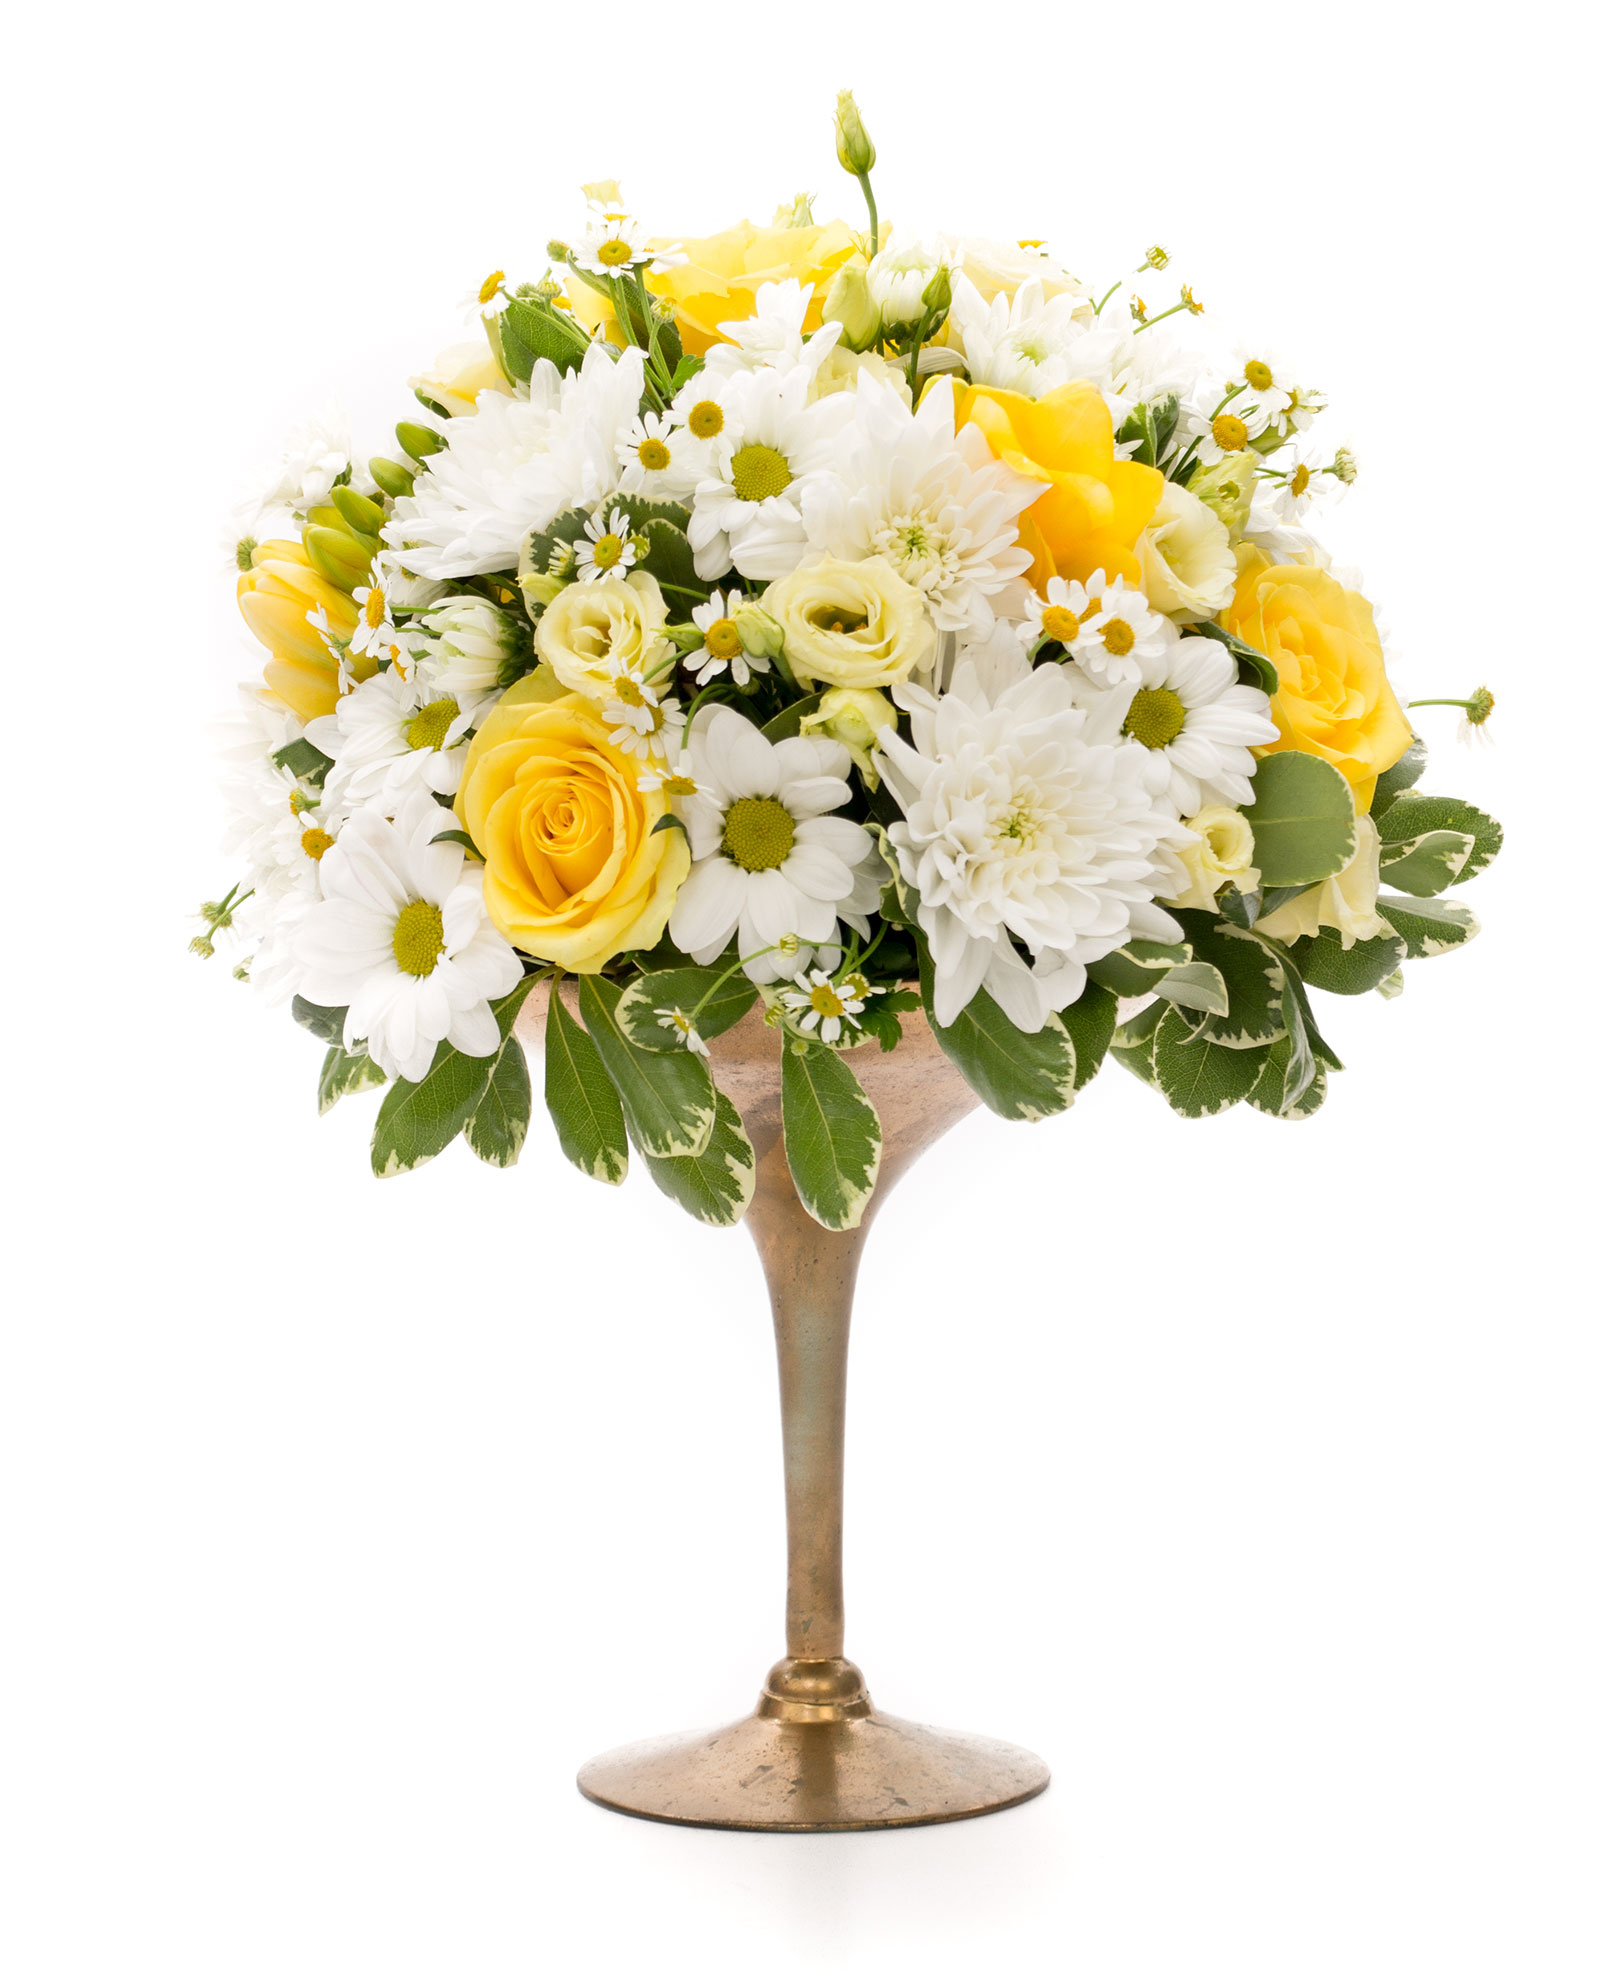 Aranjament nunta cupa aurita cu flori vesele 